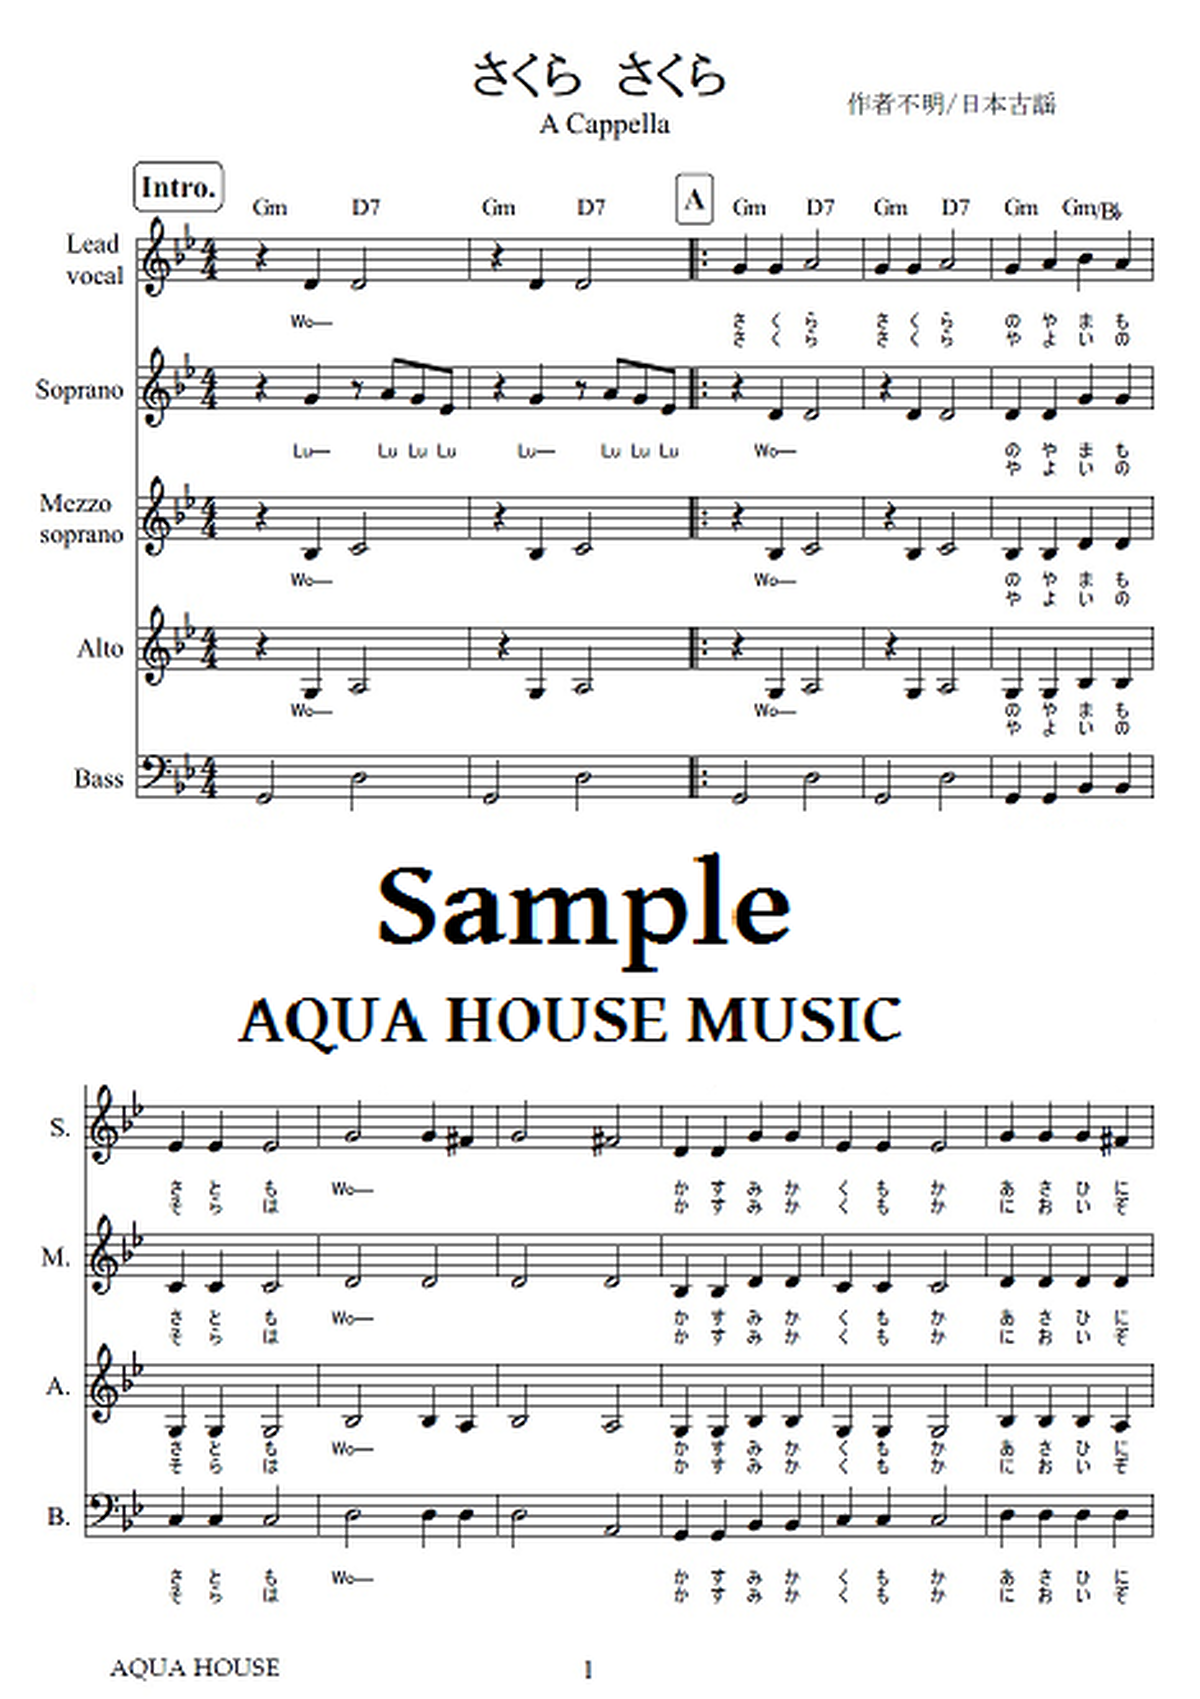 さくらさくら 童謡 アカペラ楽譜 Aqua House Music